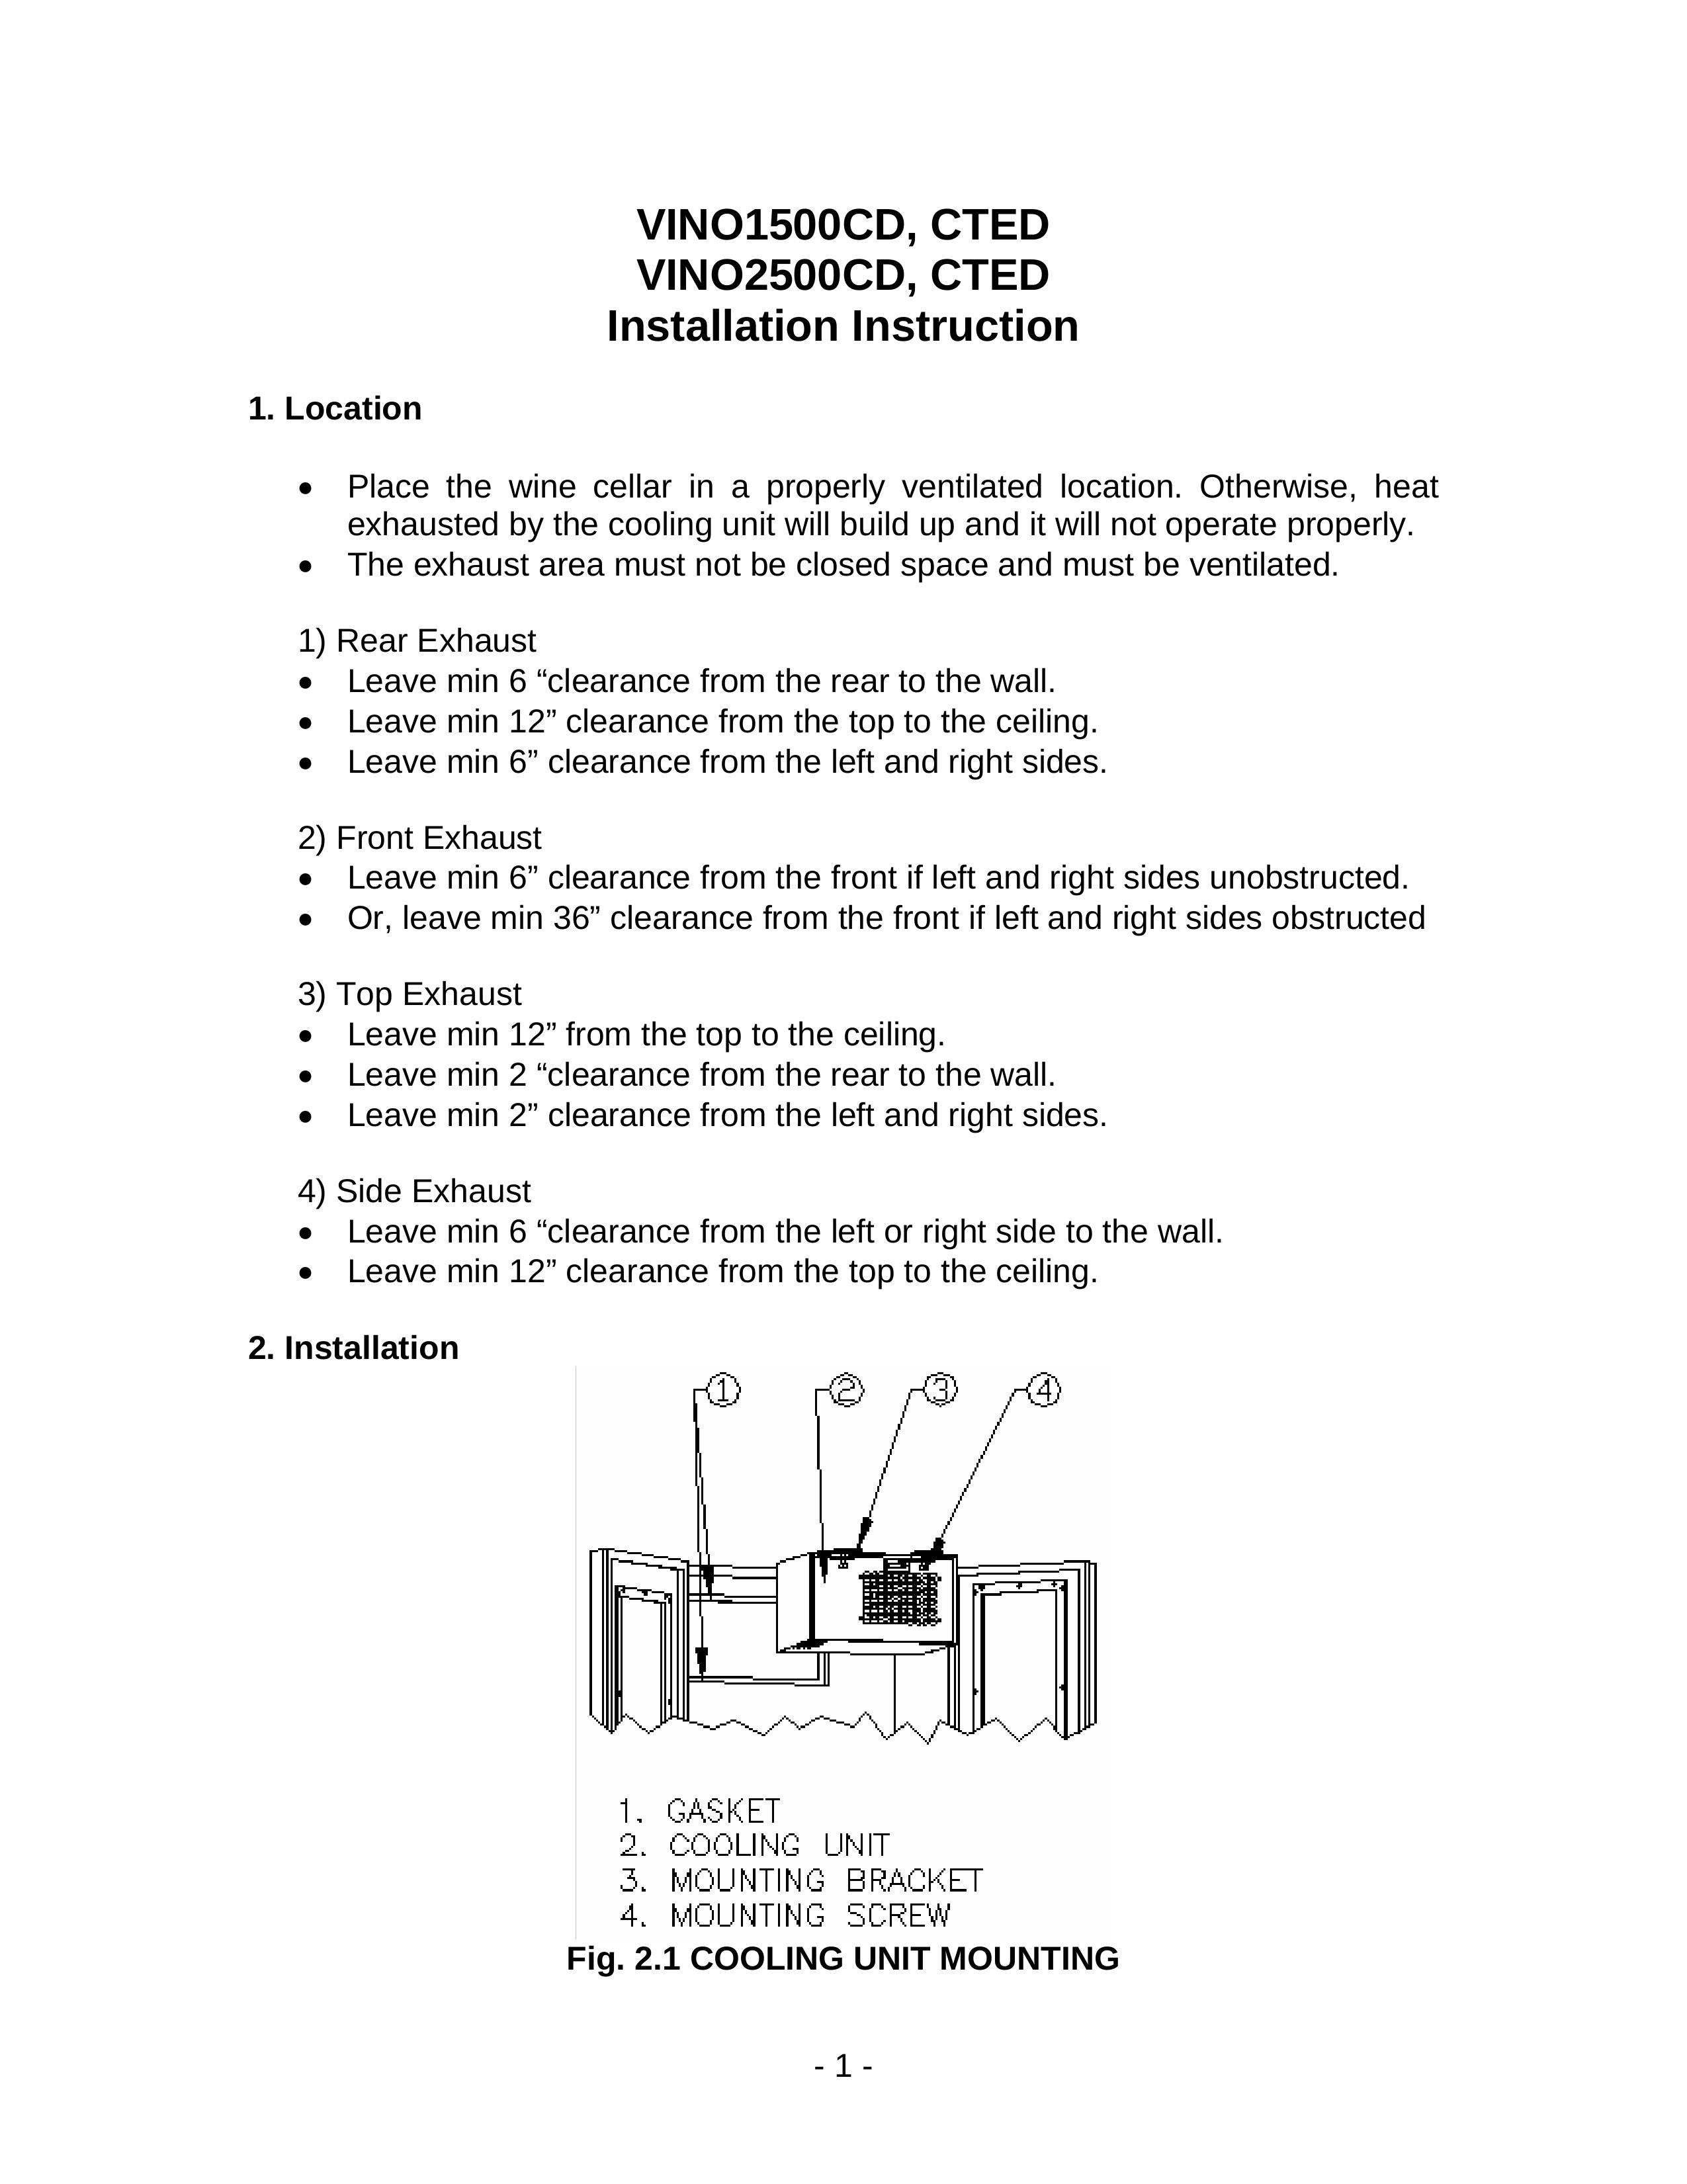 Vinotemp VINO2500CD Refrigerator User Manual